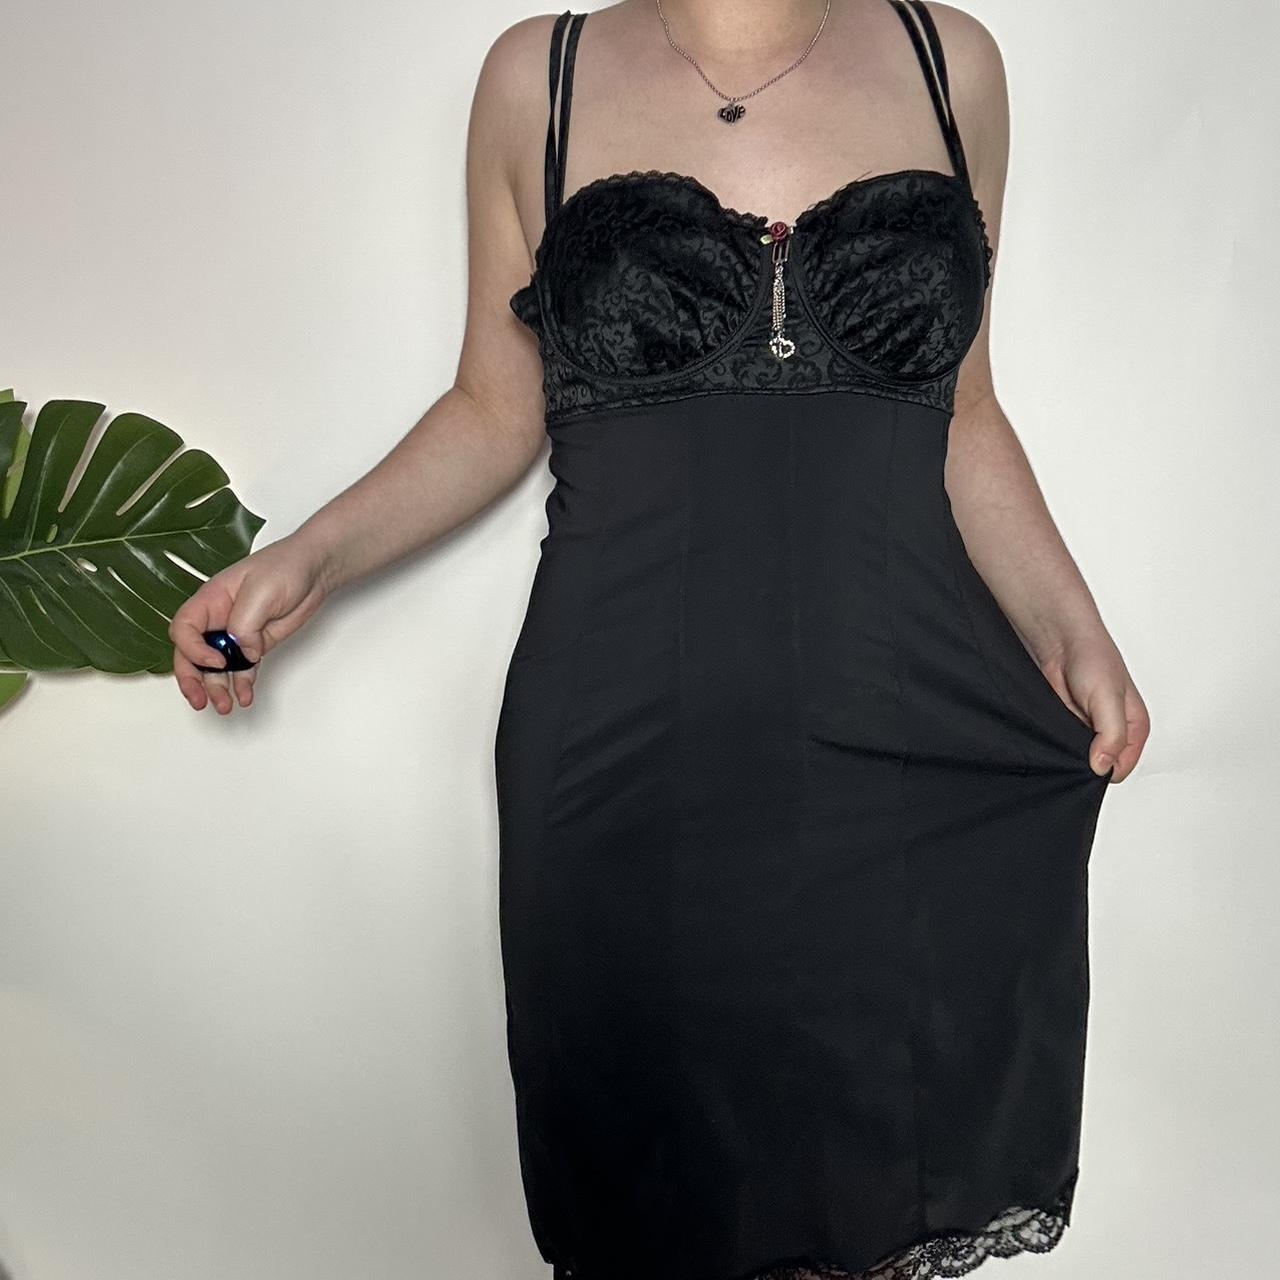 Vintage 90s black lace midi dress with love charm diamanté detailing